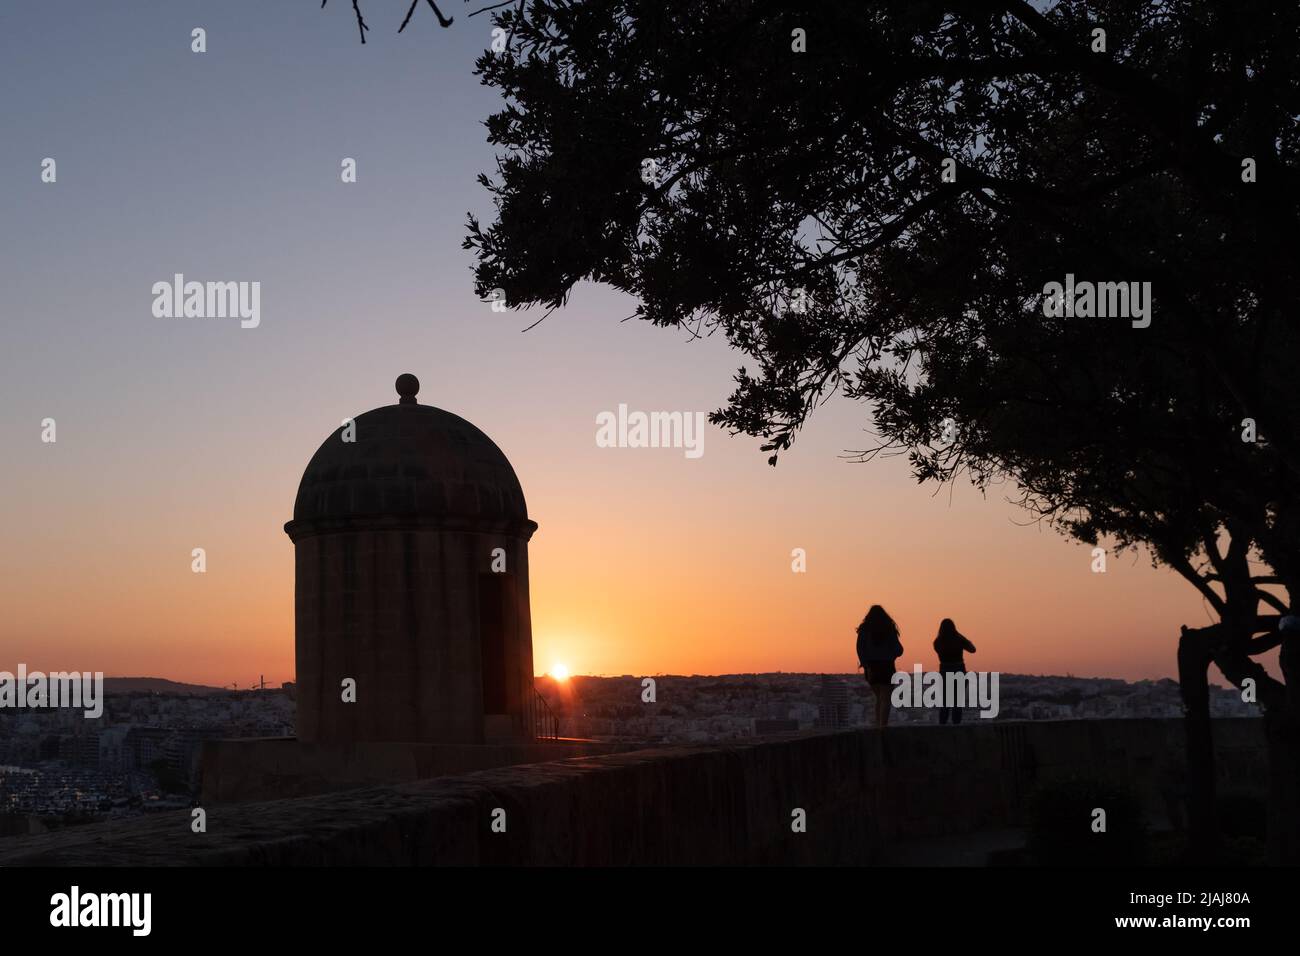 City Walls at sunset, Valletta, Malta Stock Photo